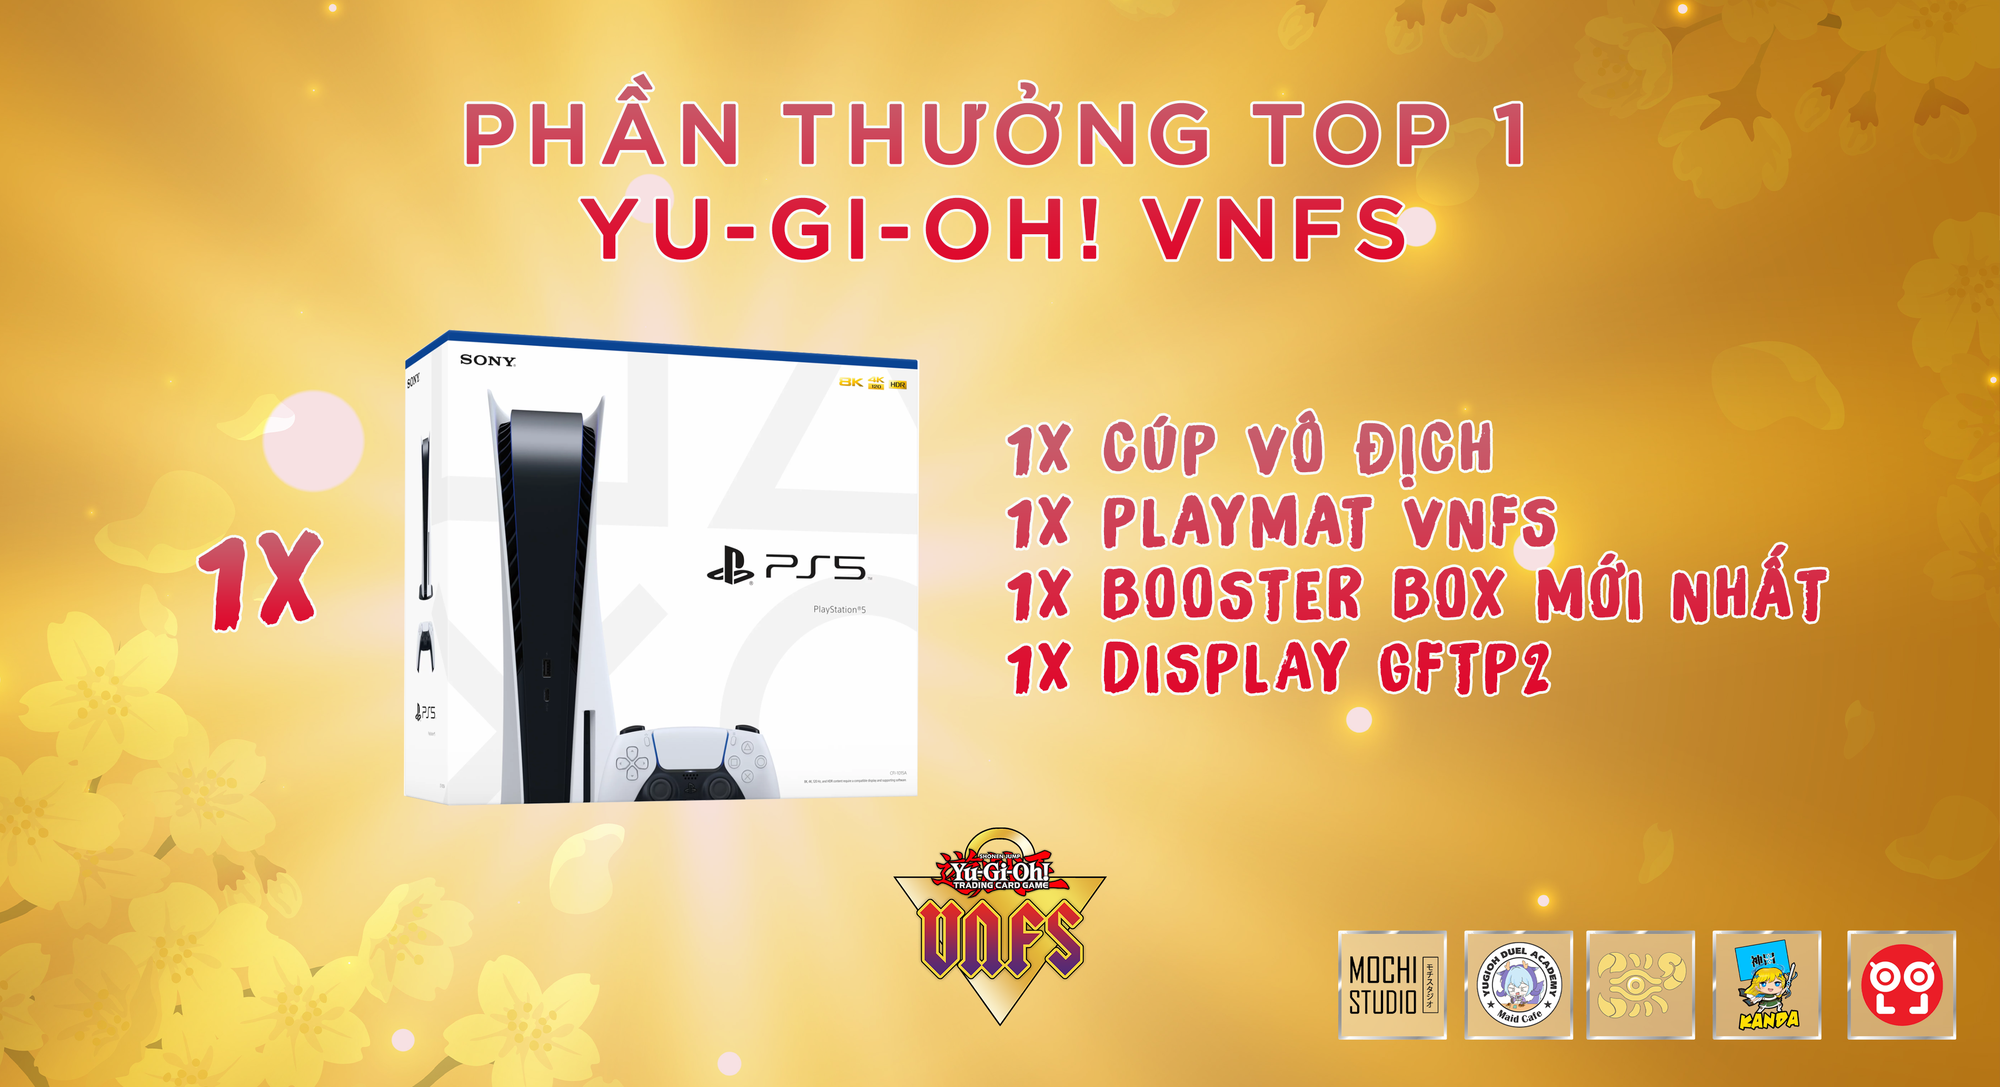 Yu-Gi-Oh! VNFS – Lễ hội cosplay và giao lưu Yu-Gi-Oh tại Hà Nội với quy mô cực khủng - ảnh 1